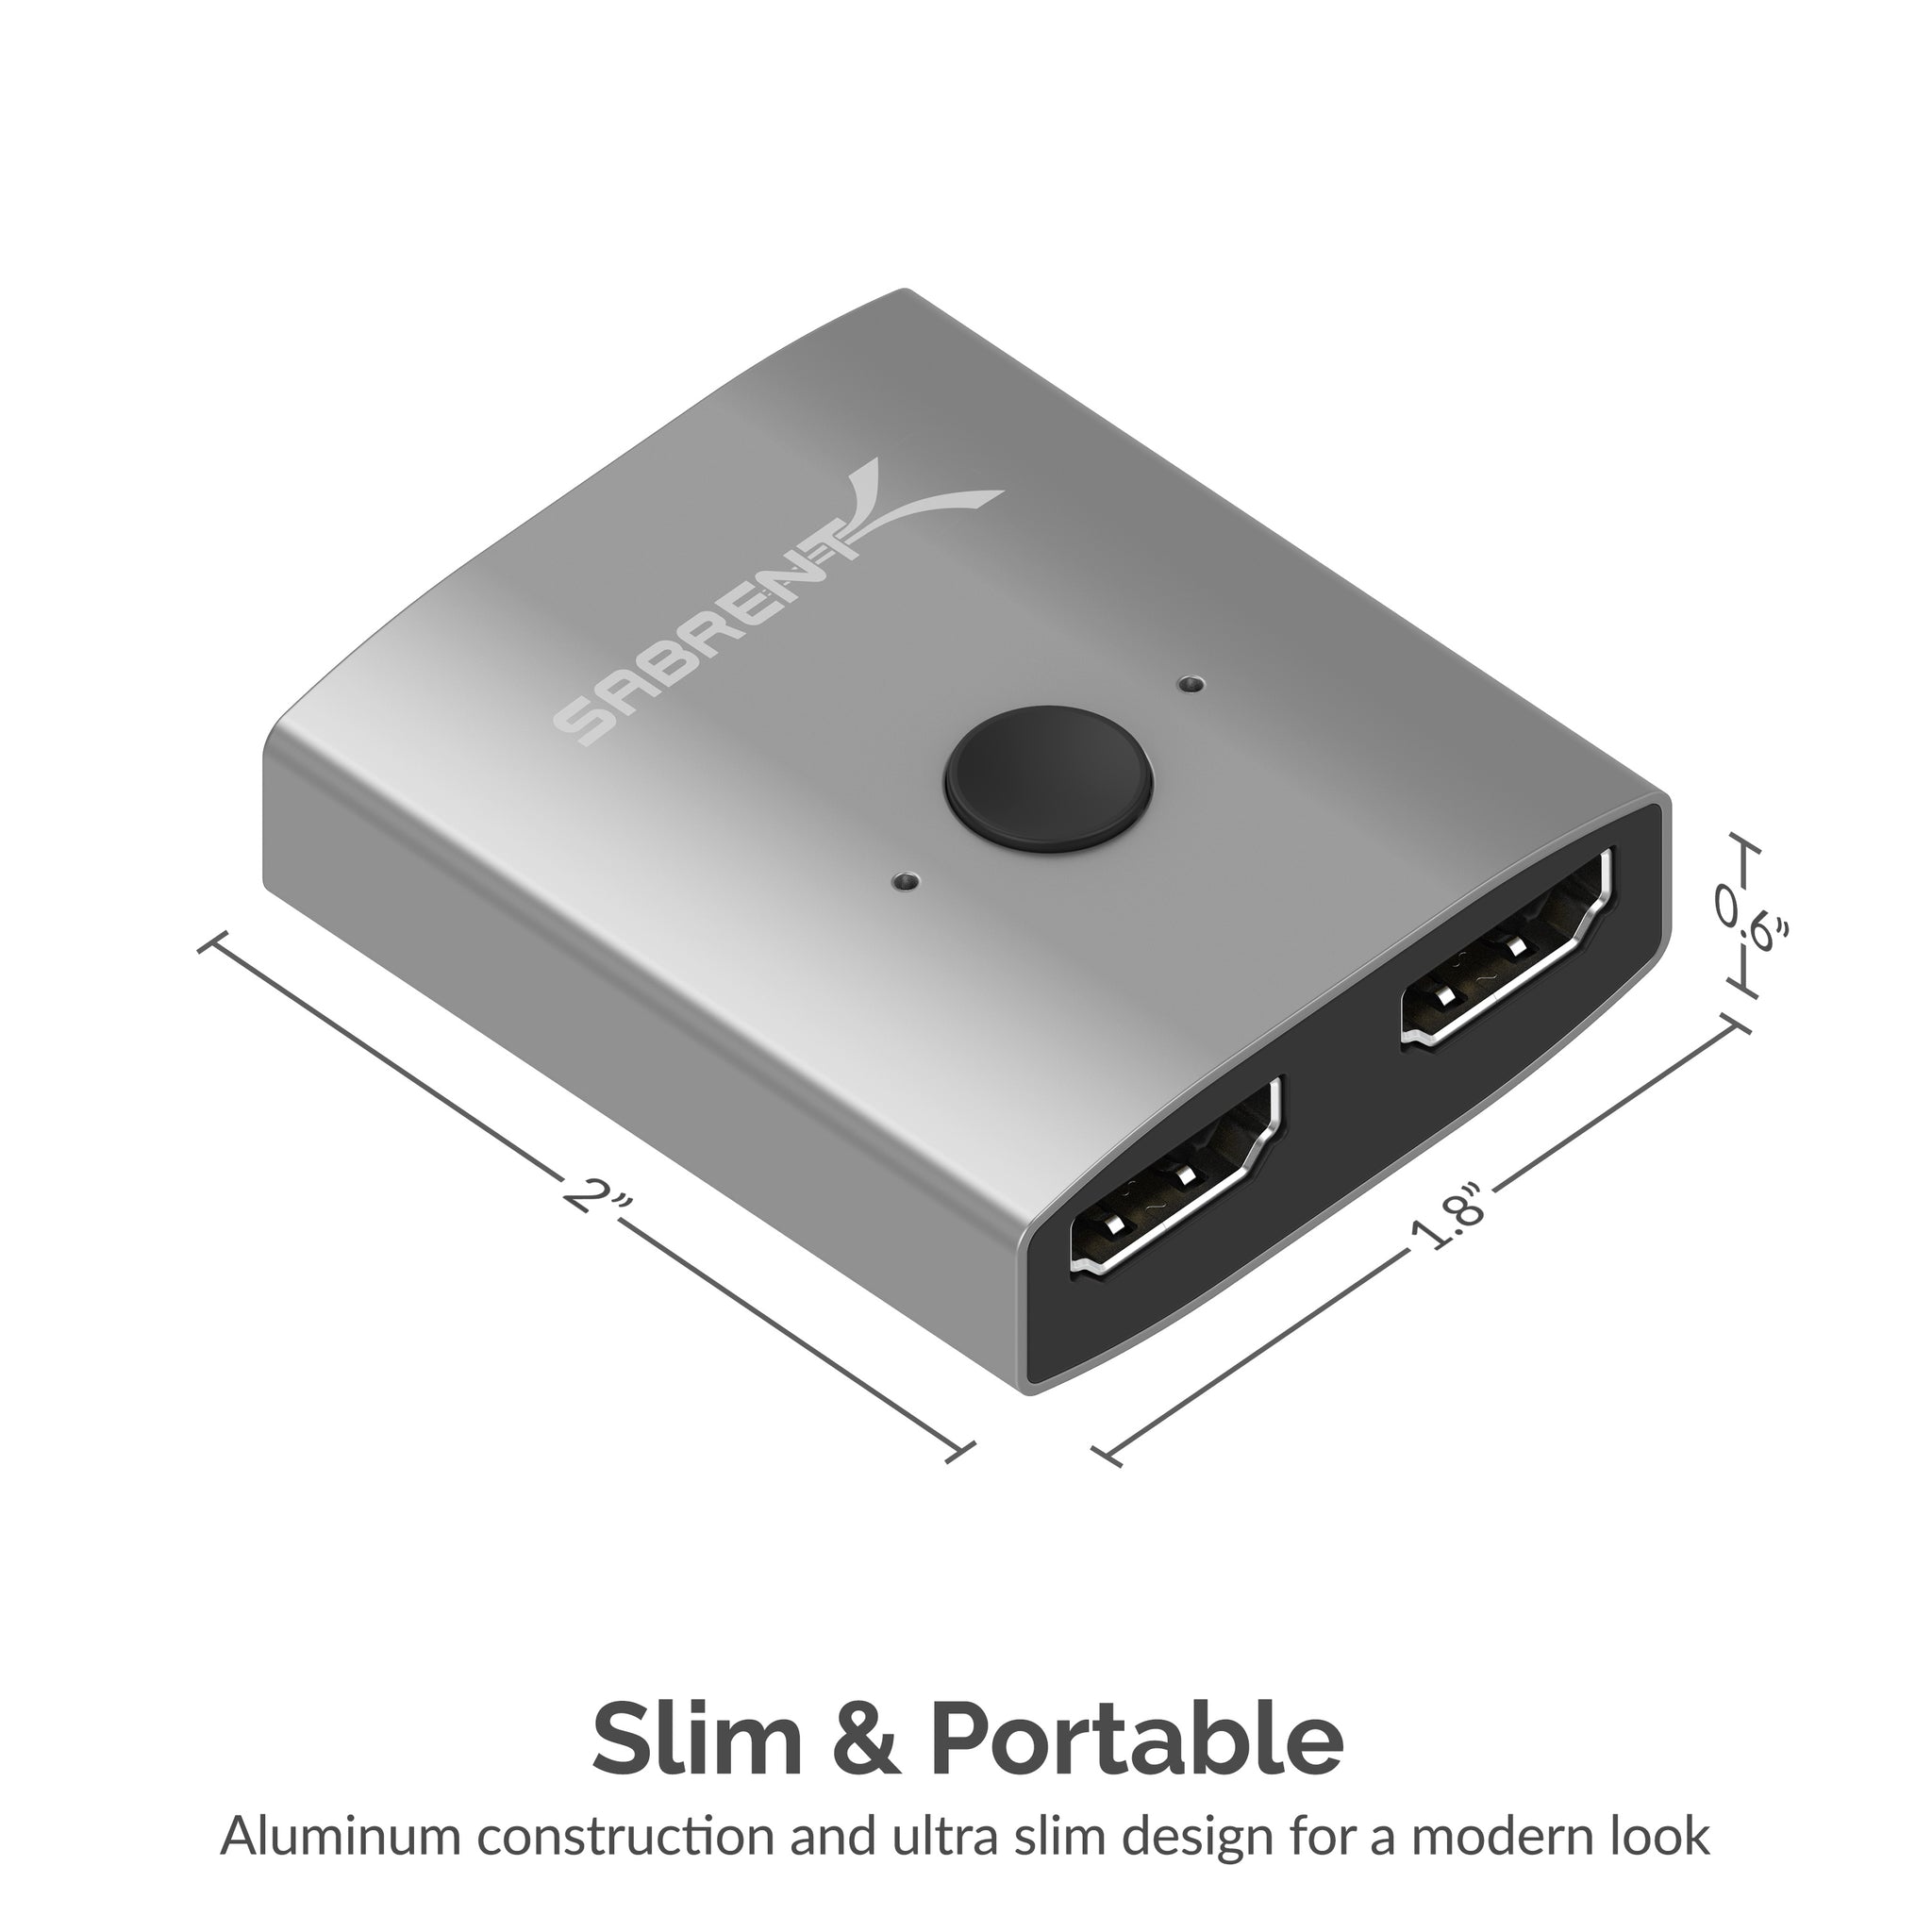 HDMI Splitter, 2-Port 4K - Svart 